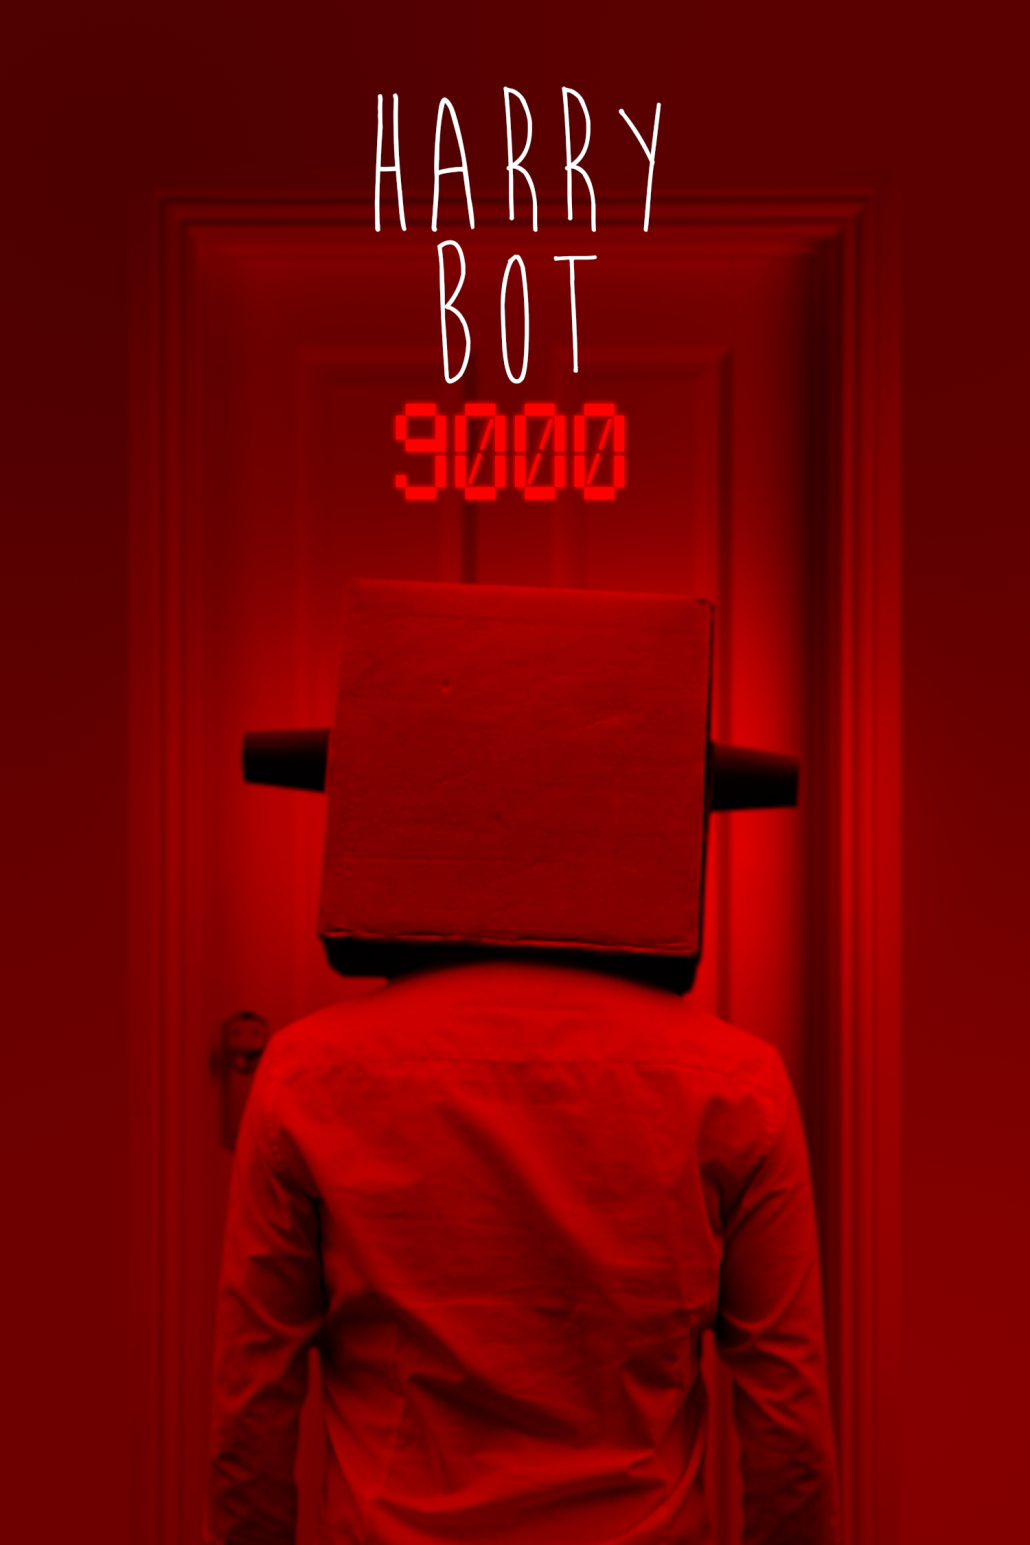 harry-bot-9000-teaser-poster-6.png